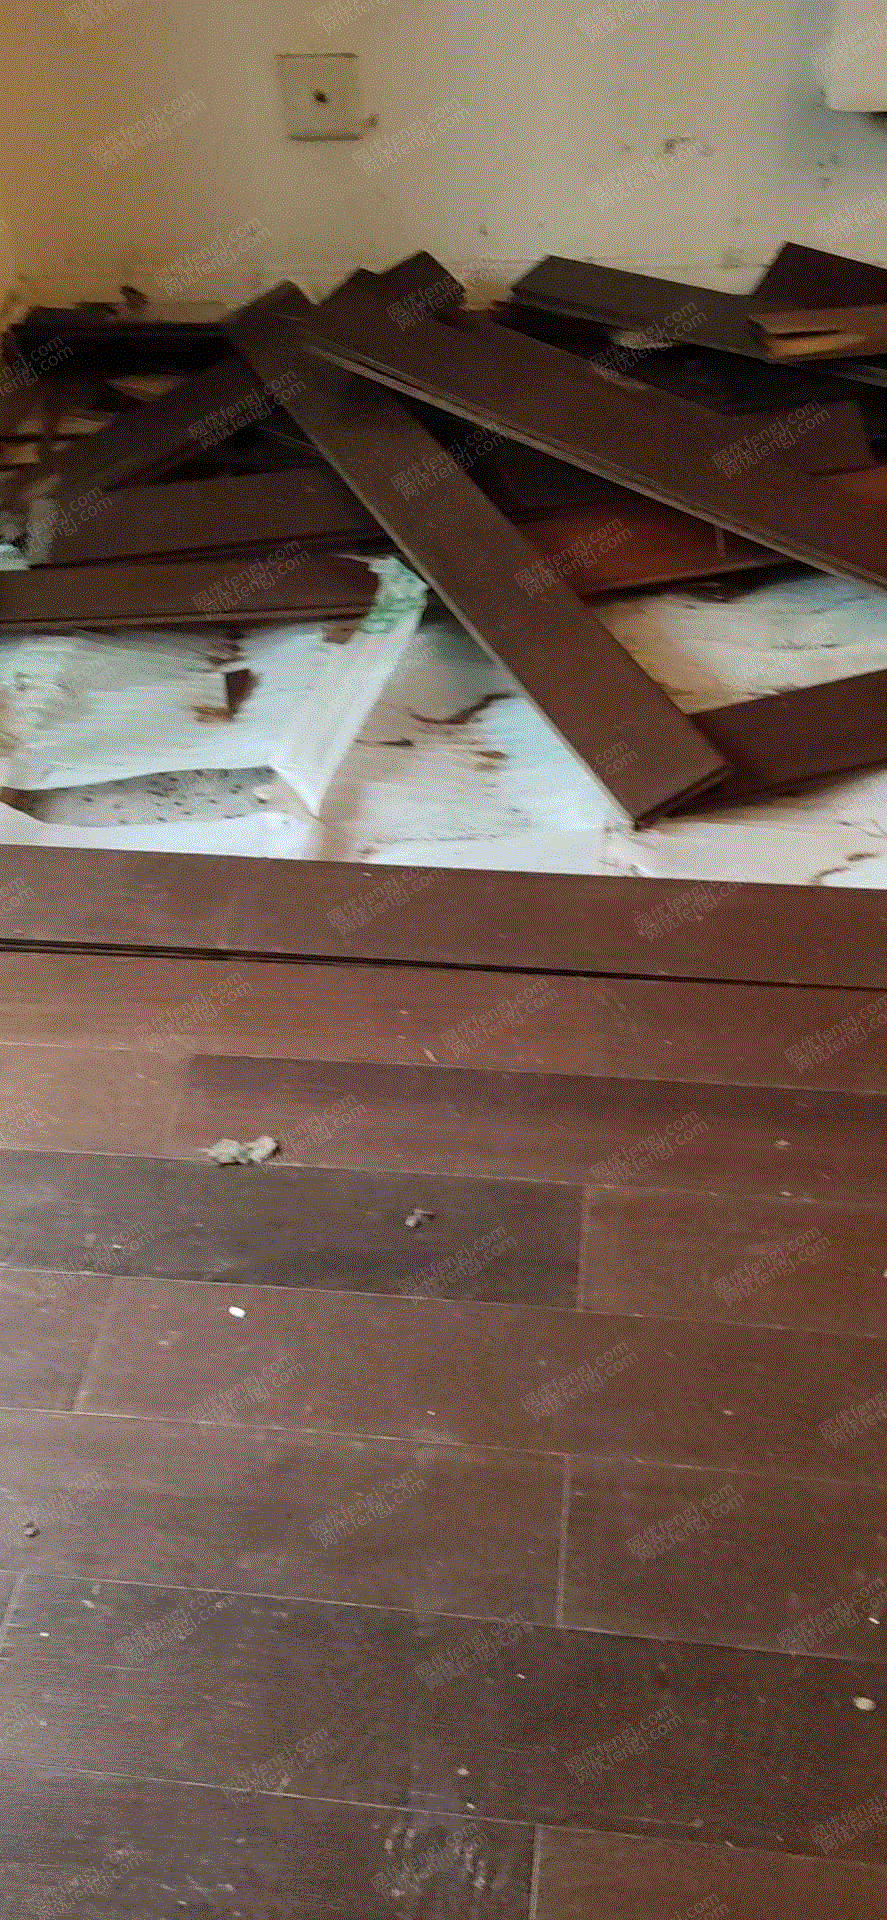 旧木材/板出售